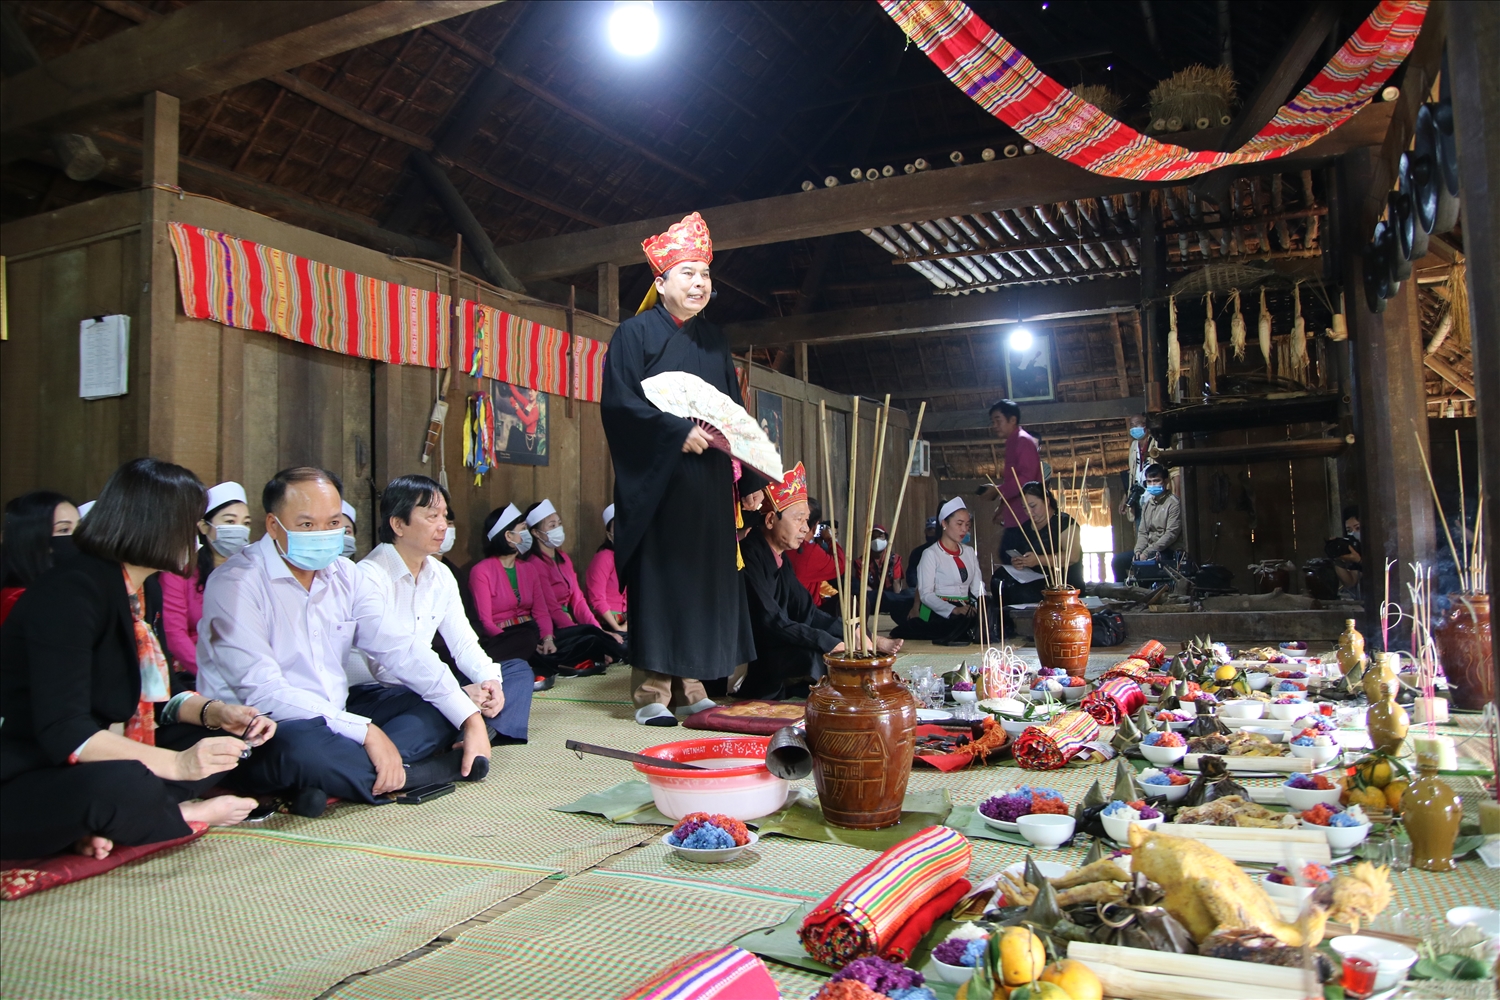 Nghi lễ Mát nhà của đồng bào dân tộc Mường được tái hiện tại Làng Văn hóa - Du lịch các dân tộc Việt Nam